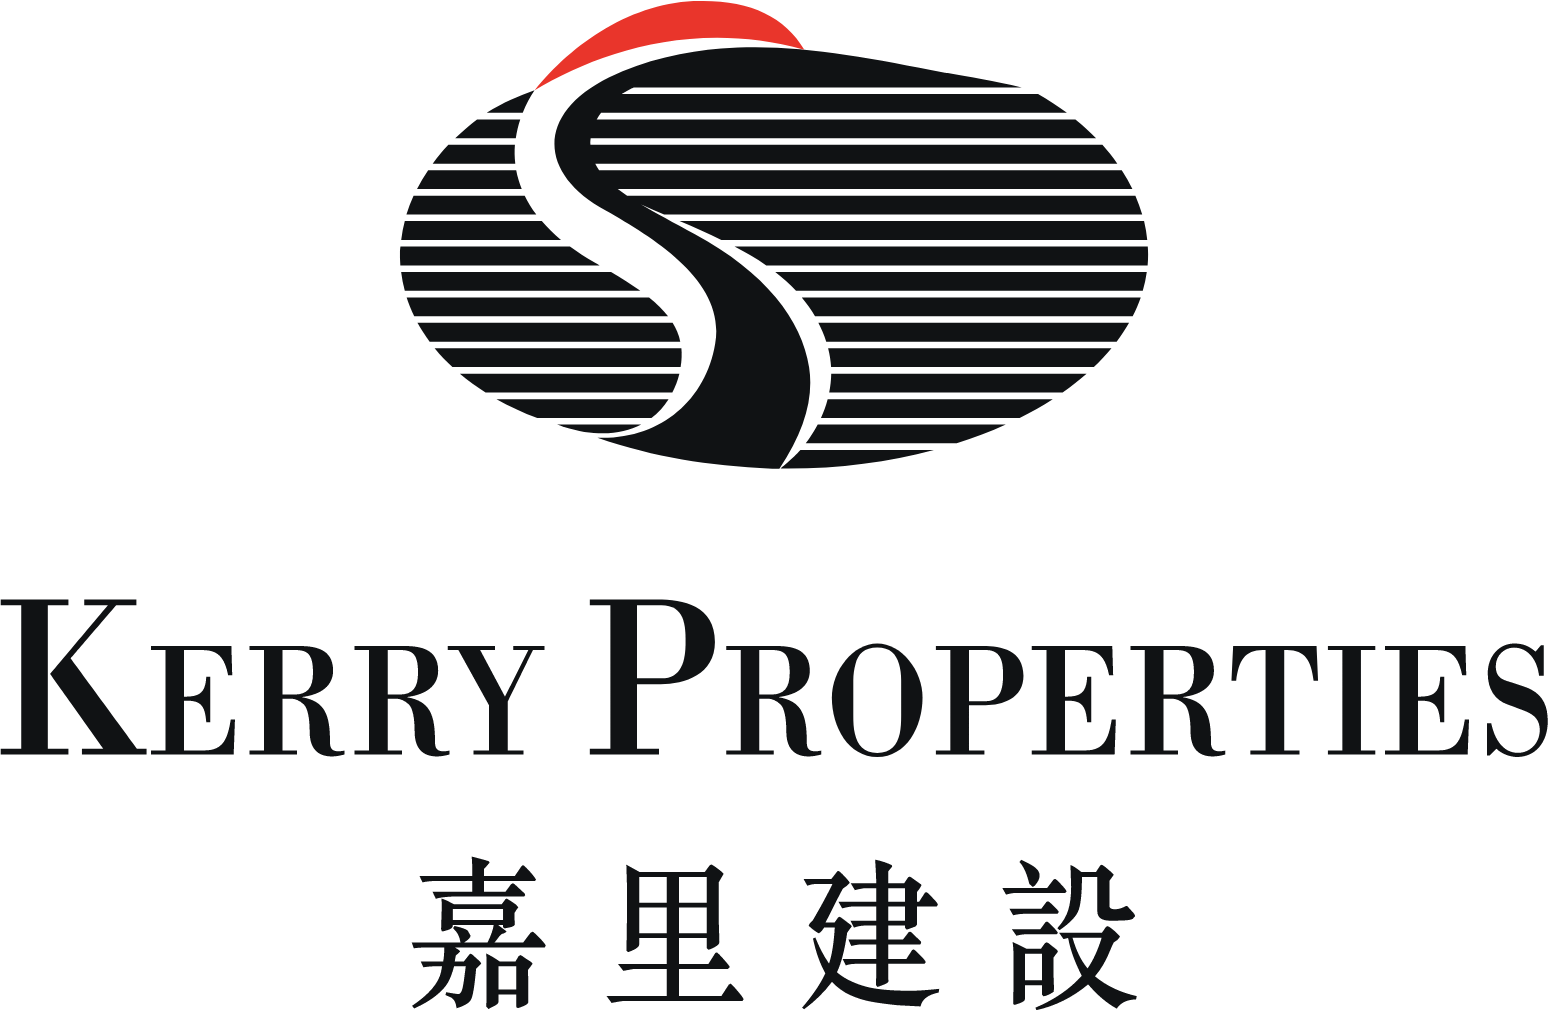 Kerry Properties logo large (transparent PNG)